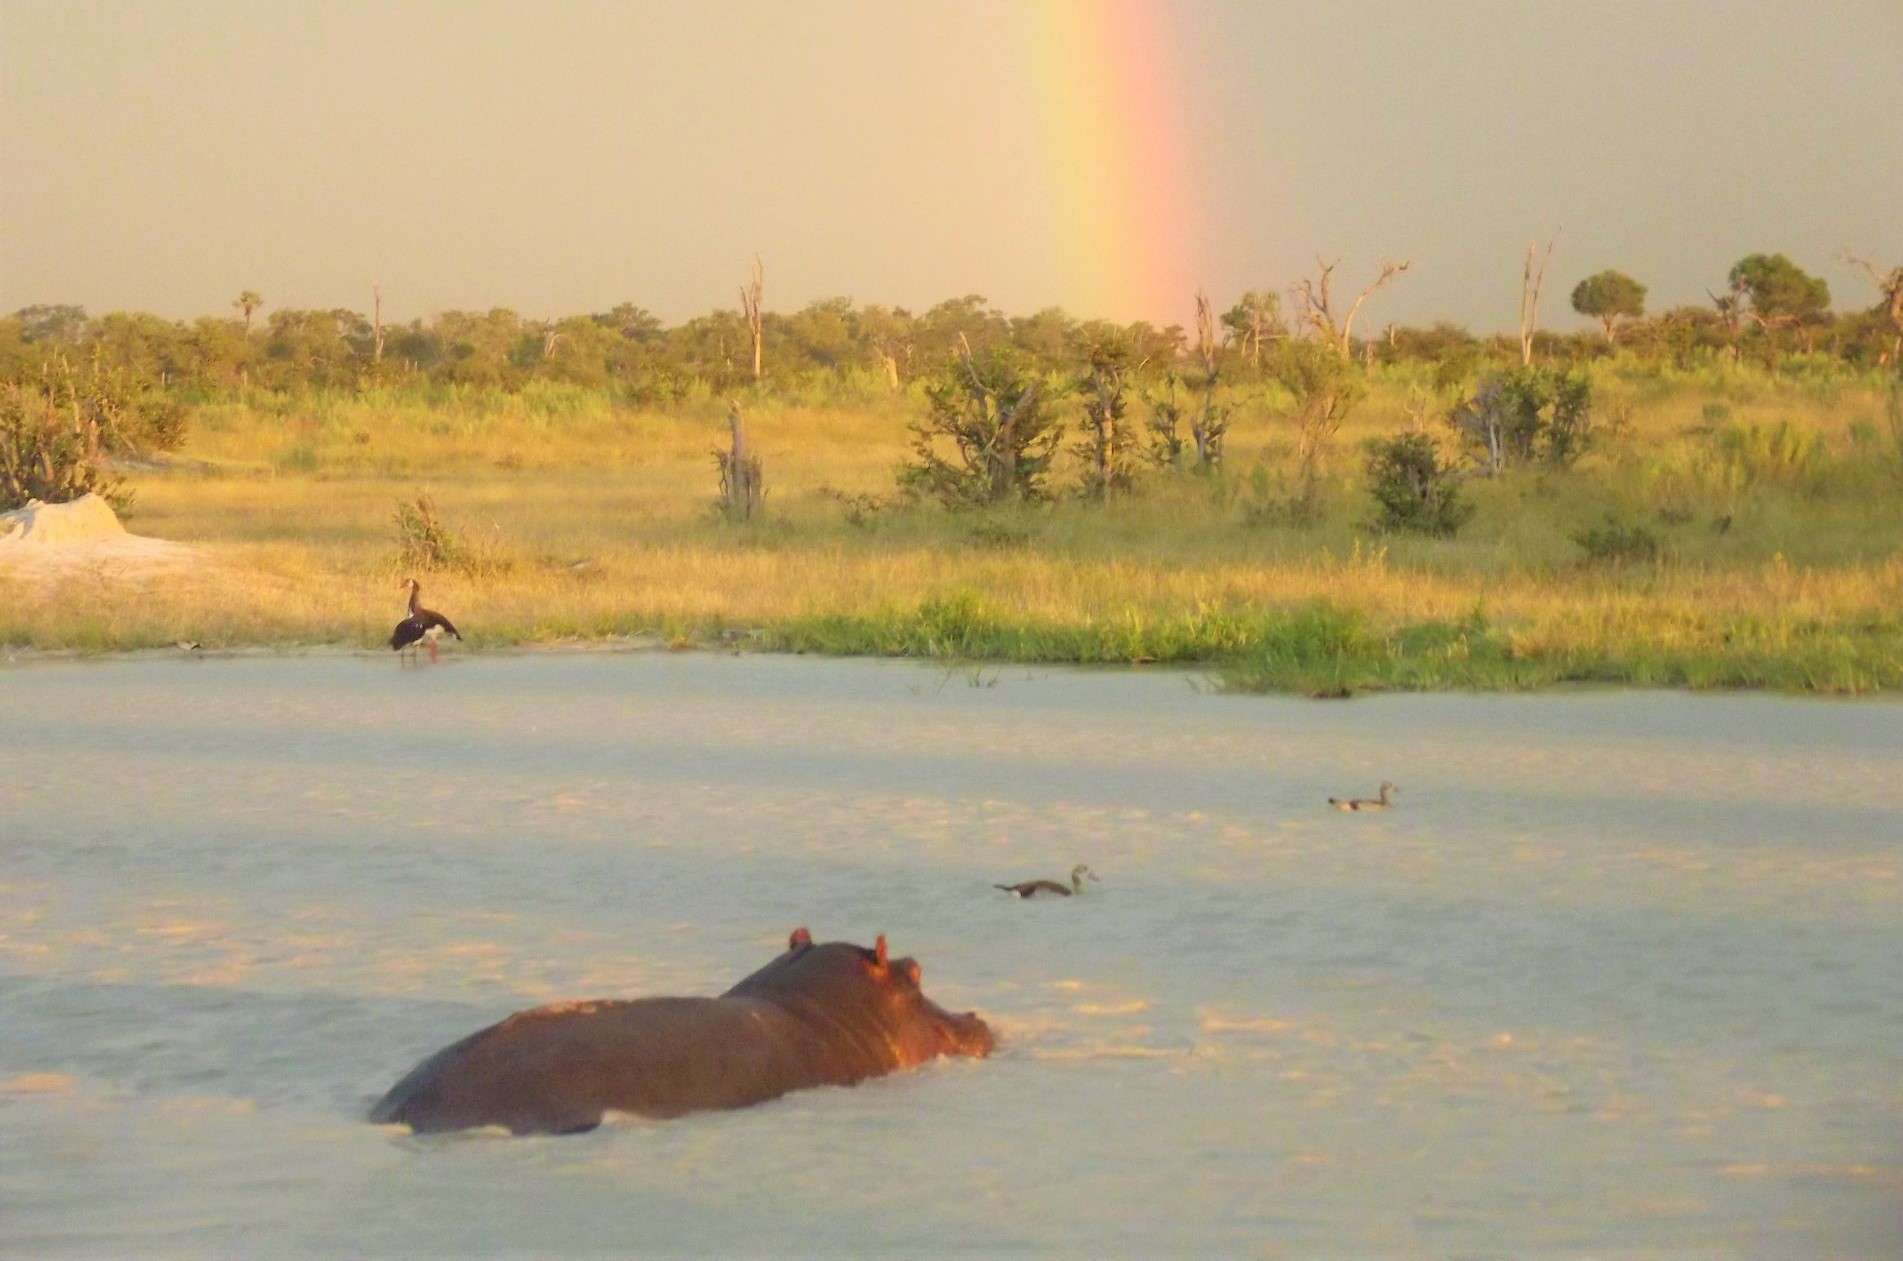 Hippo Botswana Africa